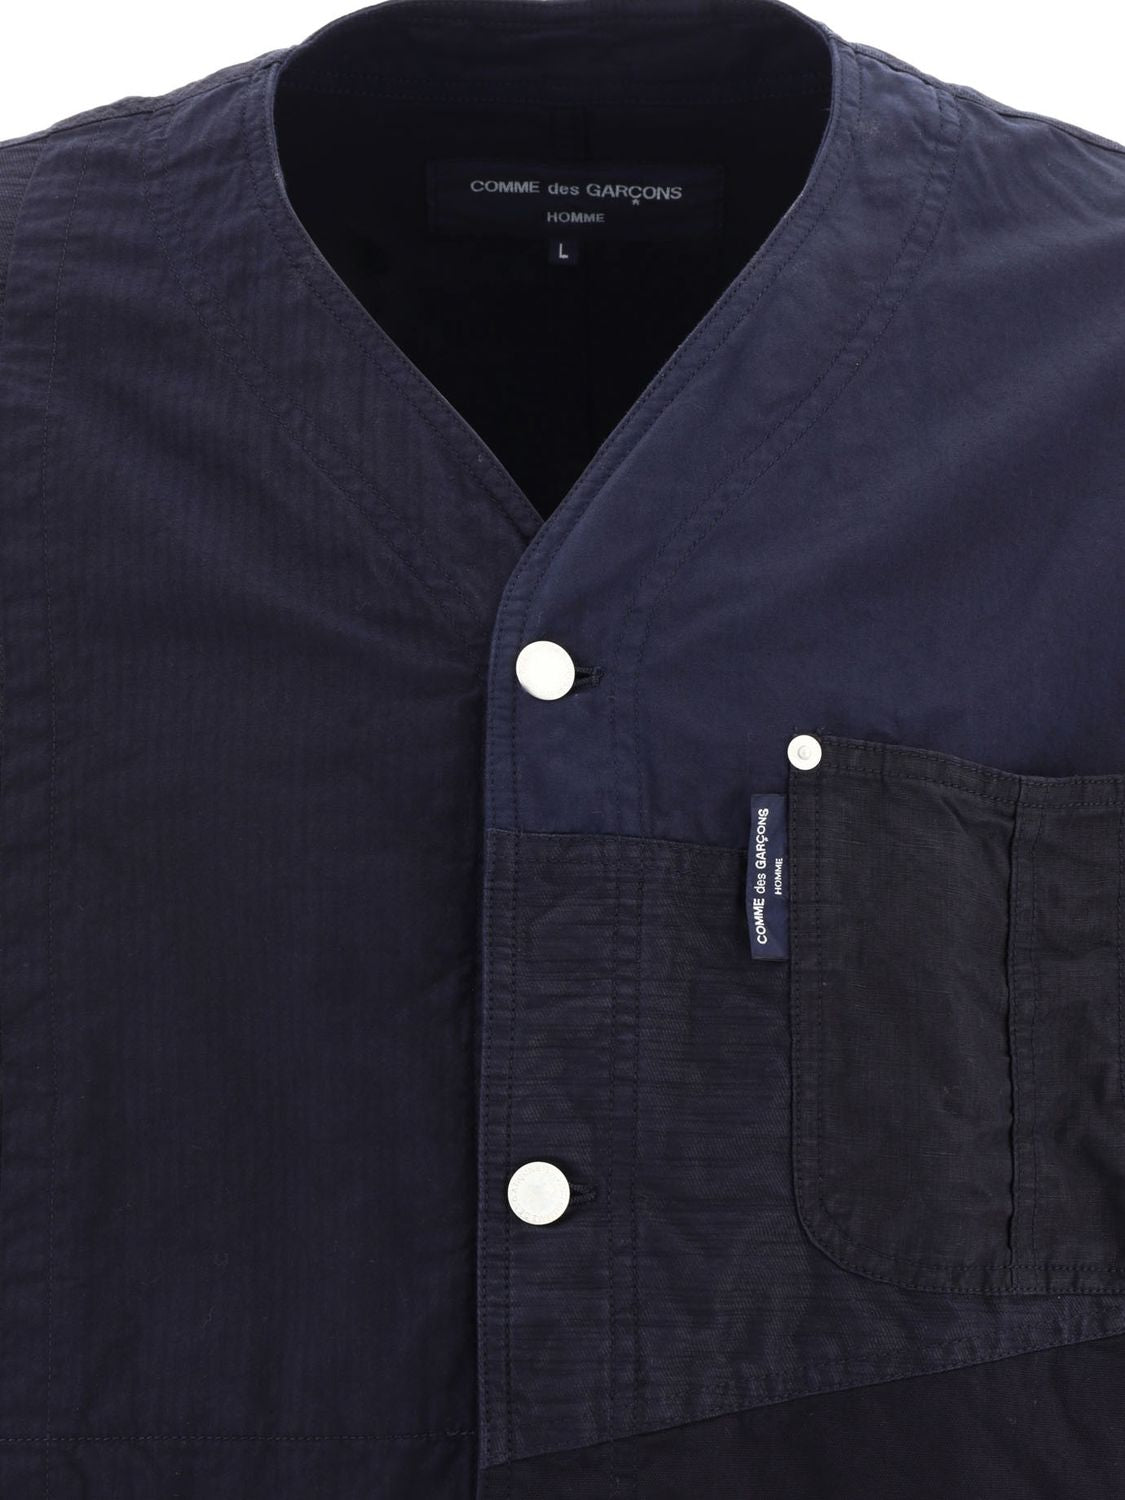 COMME DES GARÇONS HOMME PLUS Navy Patchwork Jacket for Men - 70% Cotton 30% Linen